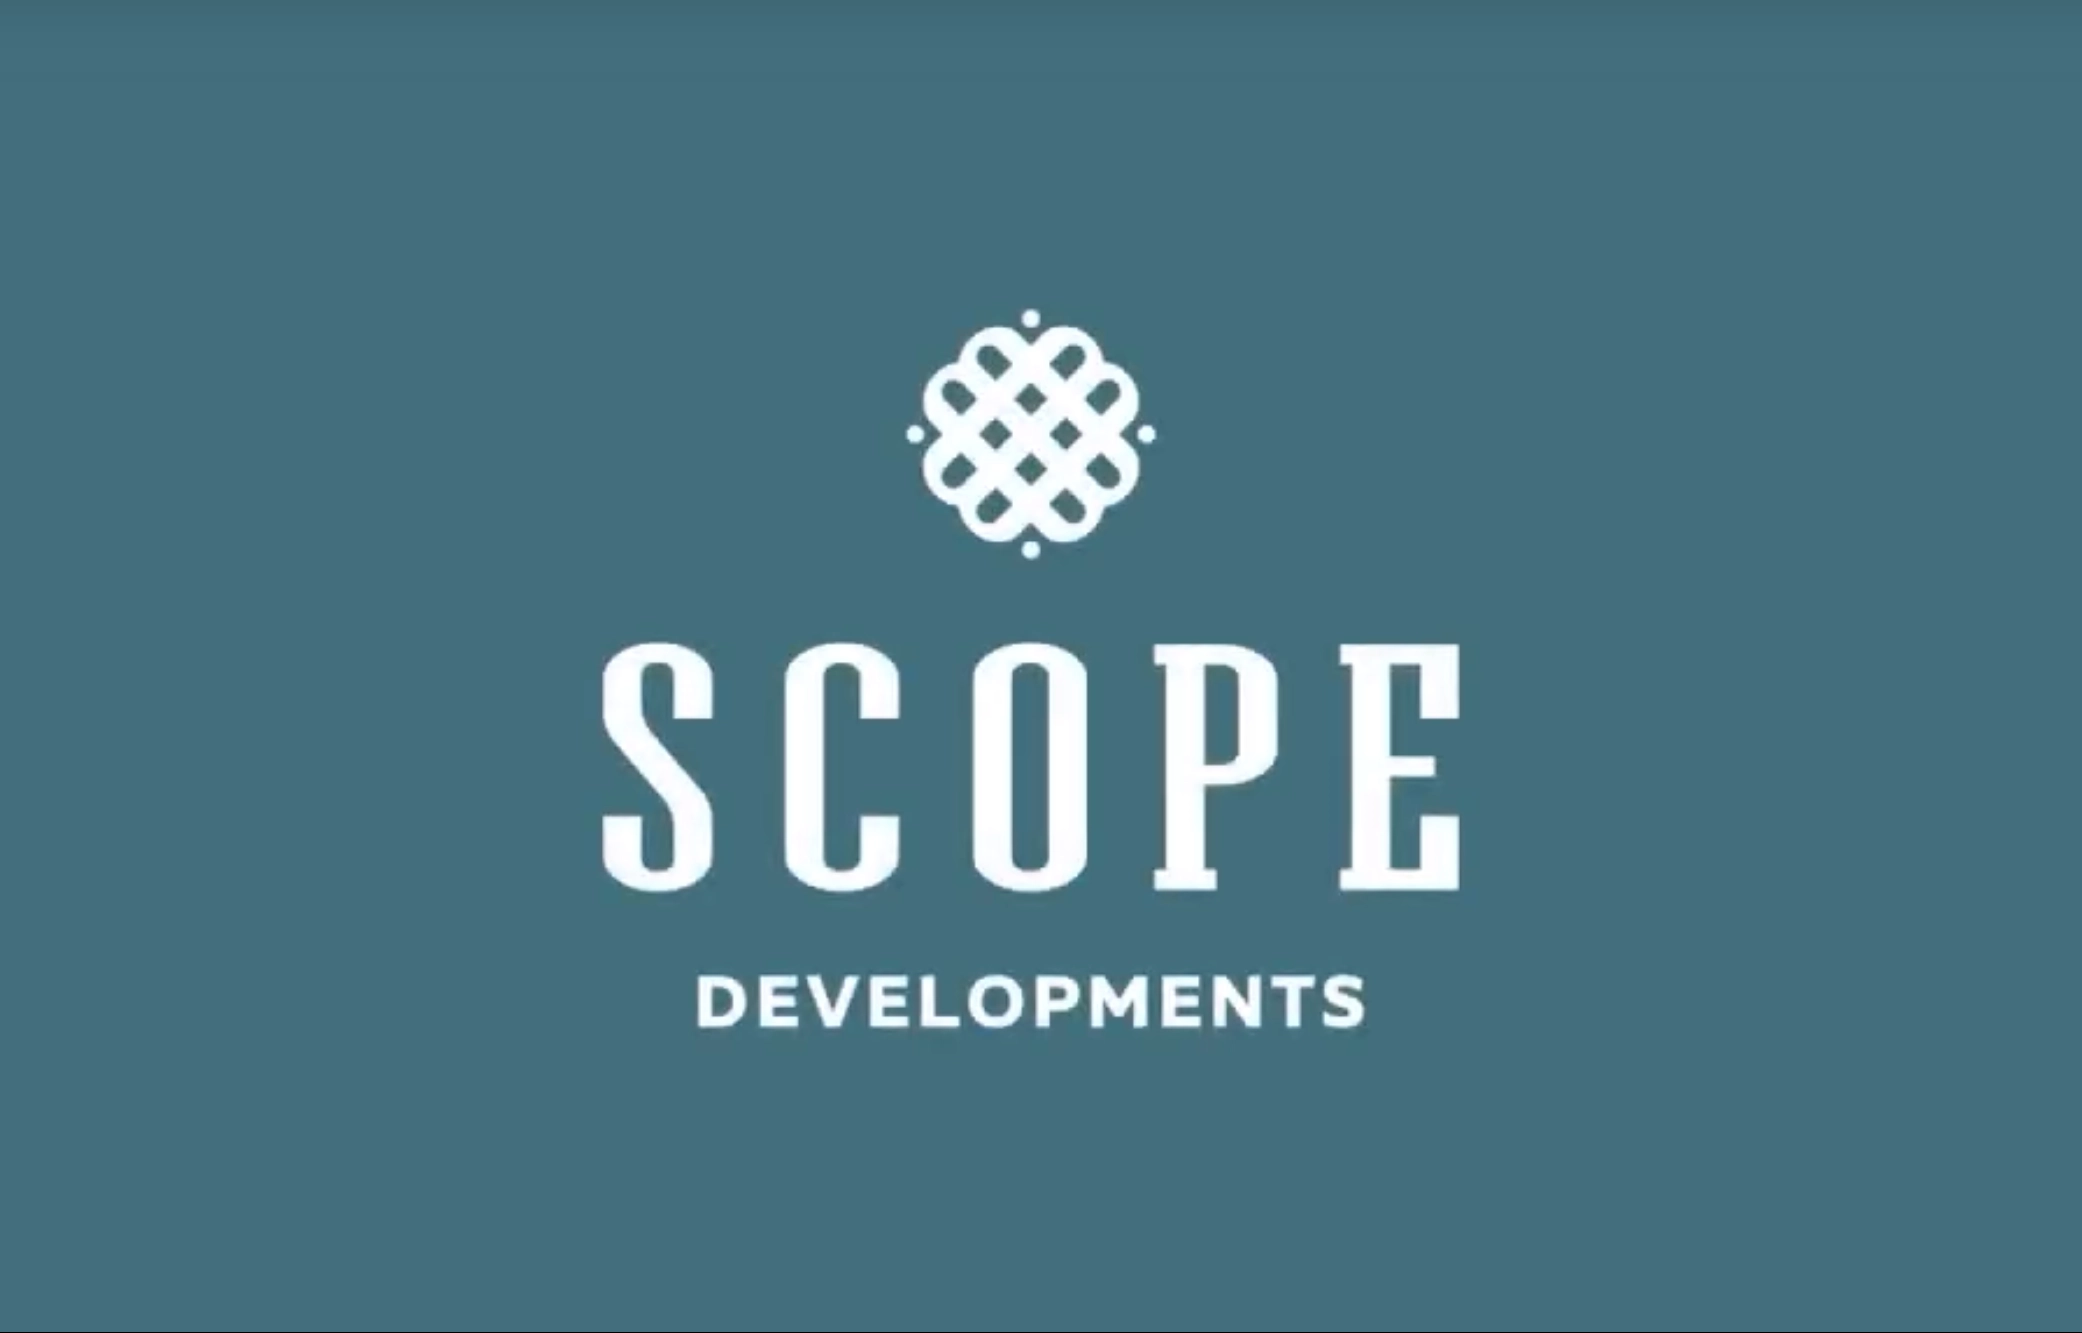 شركة سكوب للتطوير العقاري Scope Developments